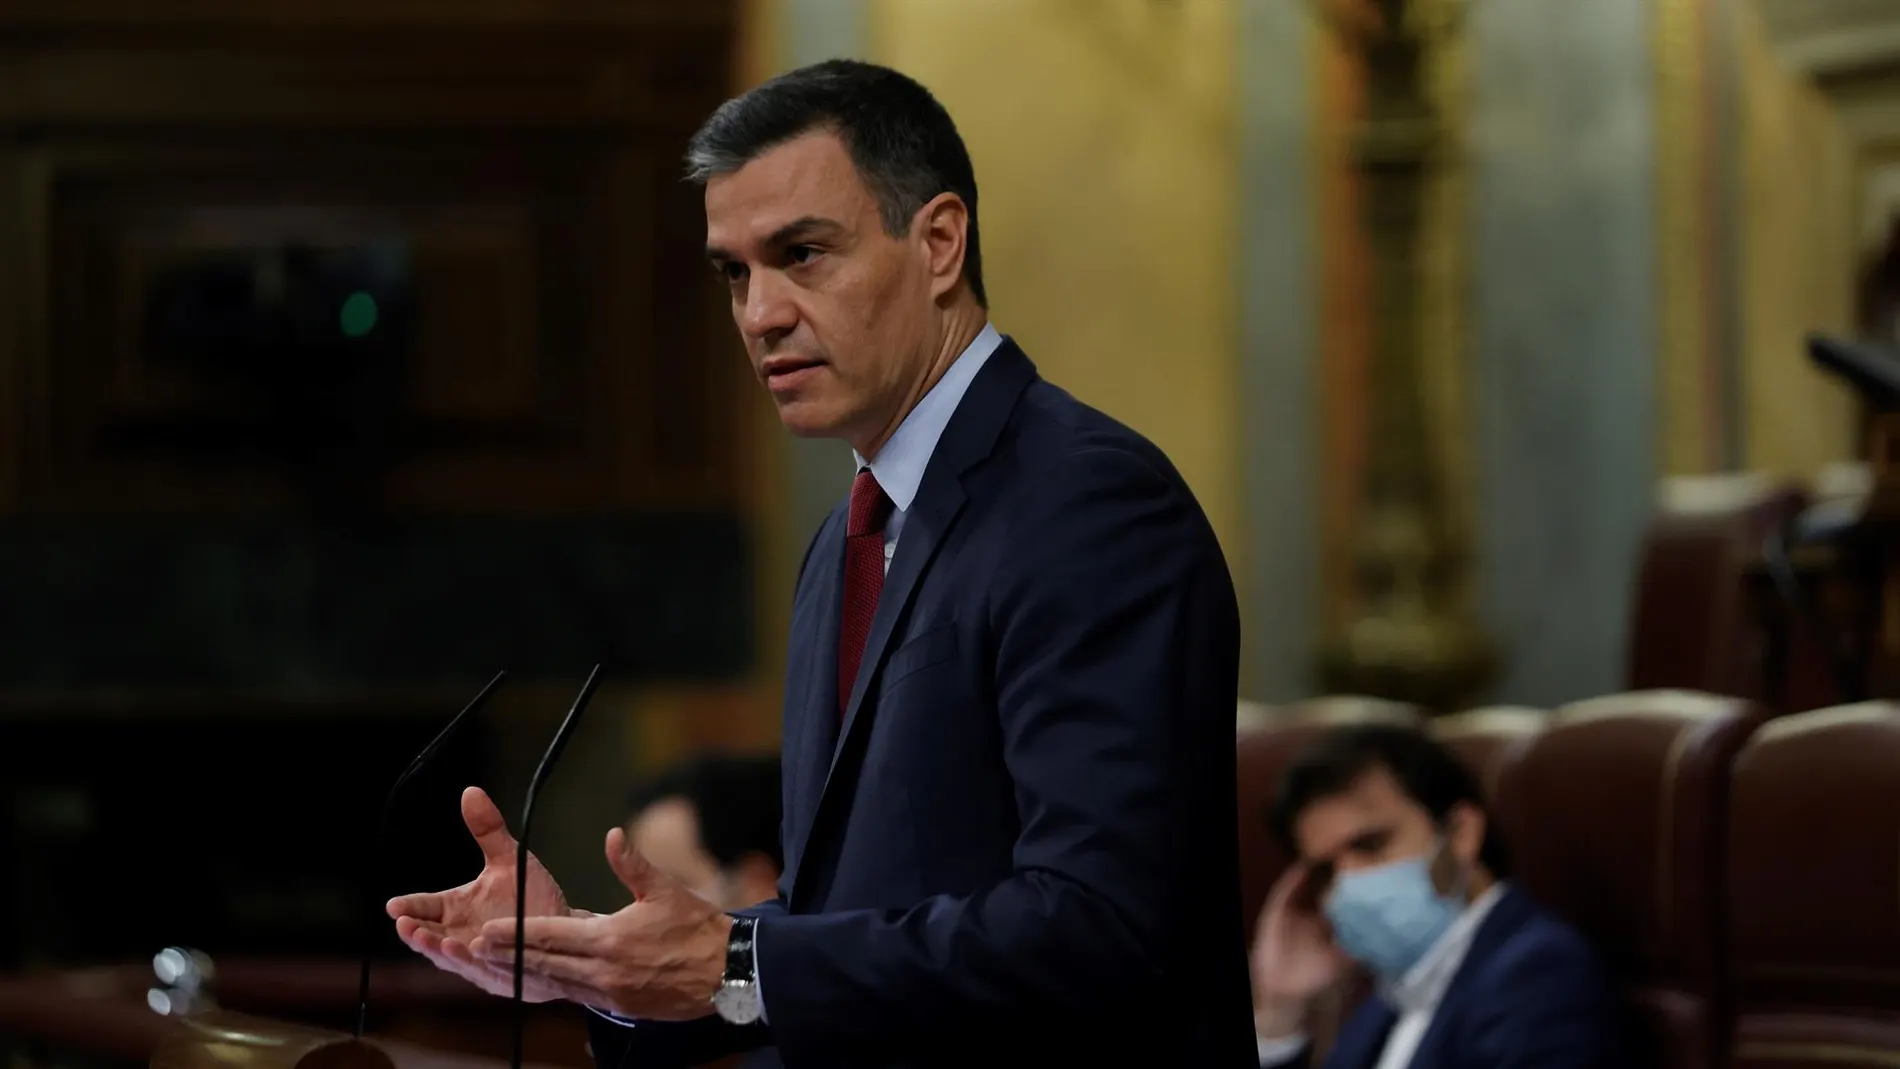 Pedro Sánchez enmienda a su portavoz: "Es evidente que Cuba no es una democracia"